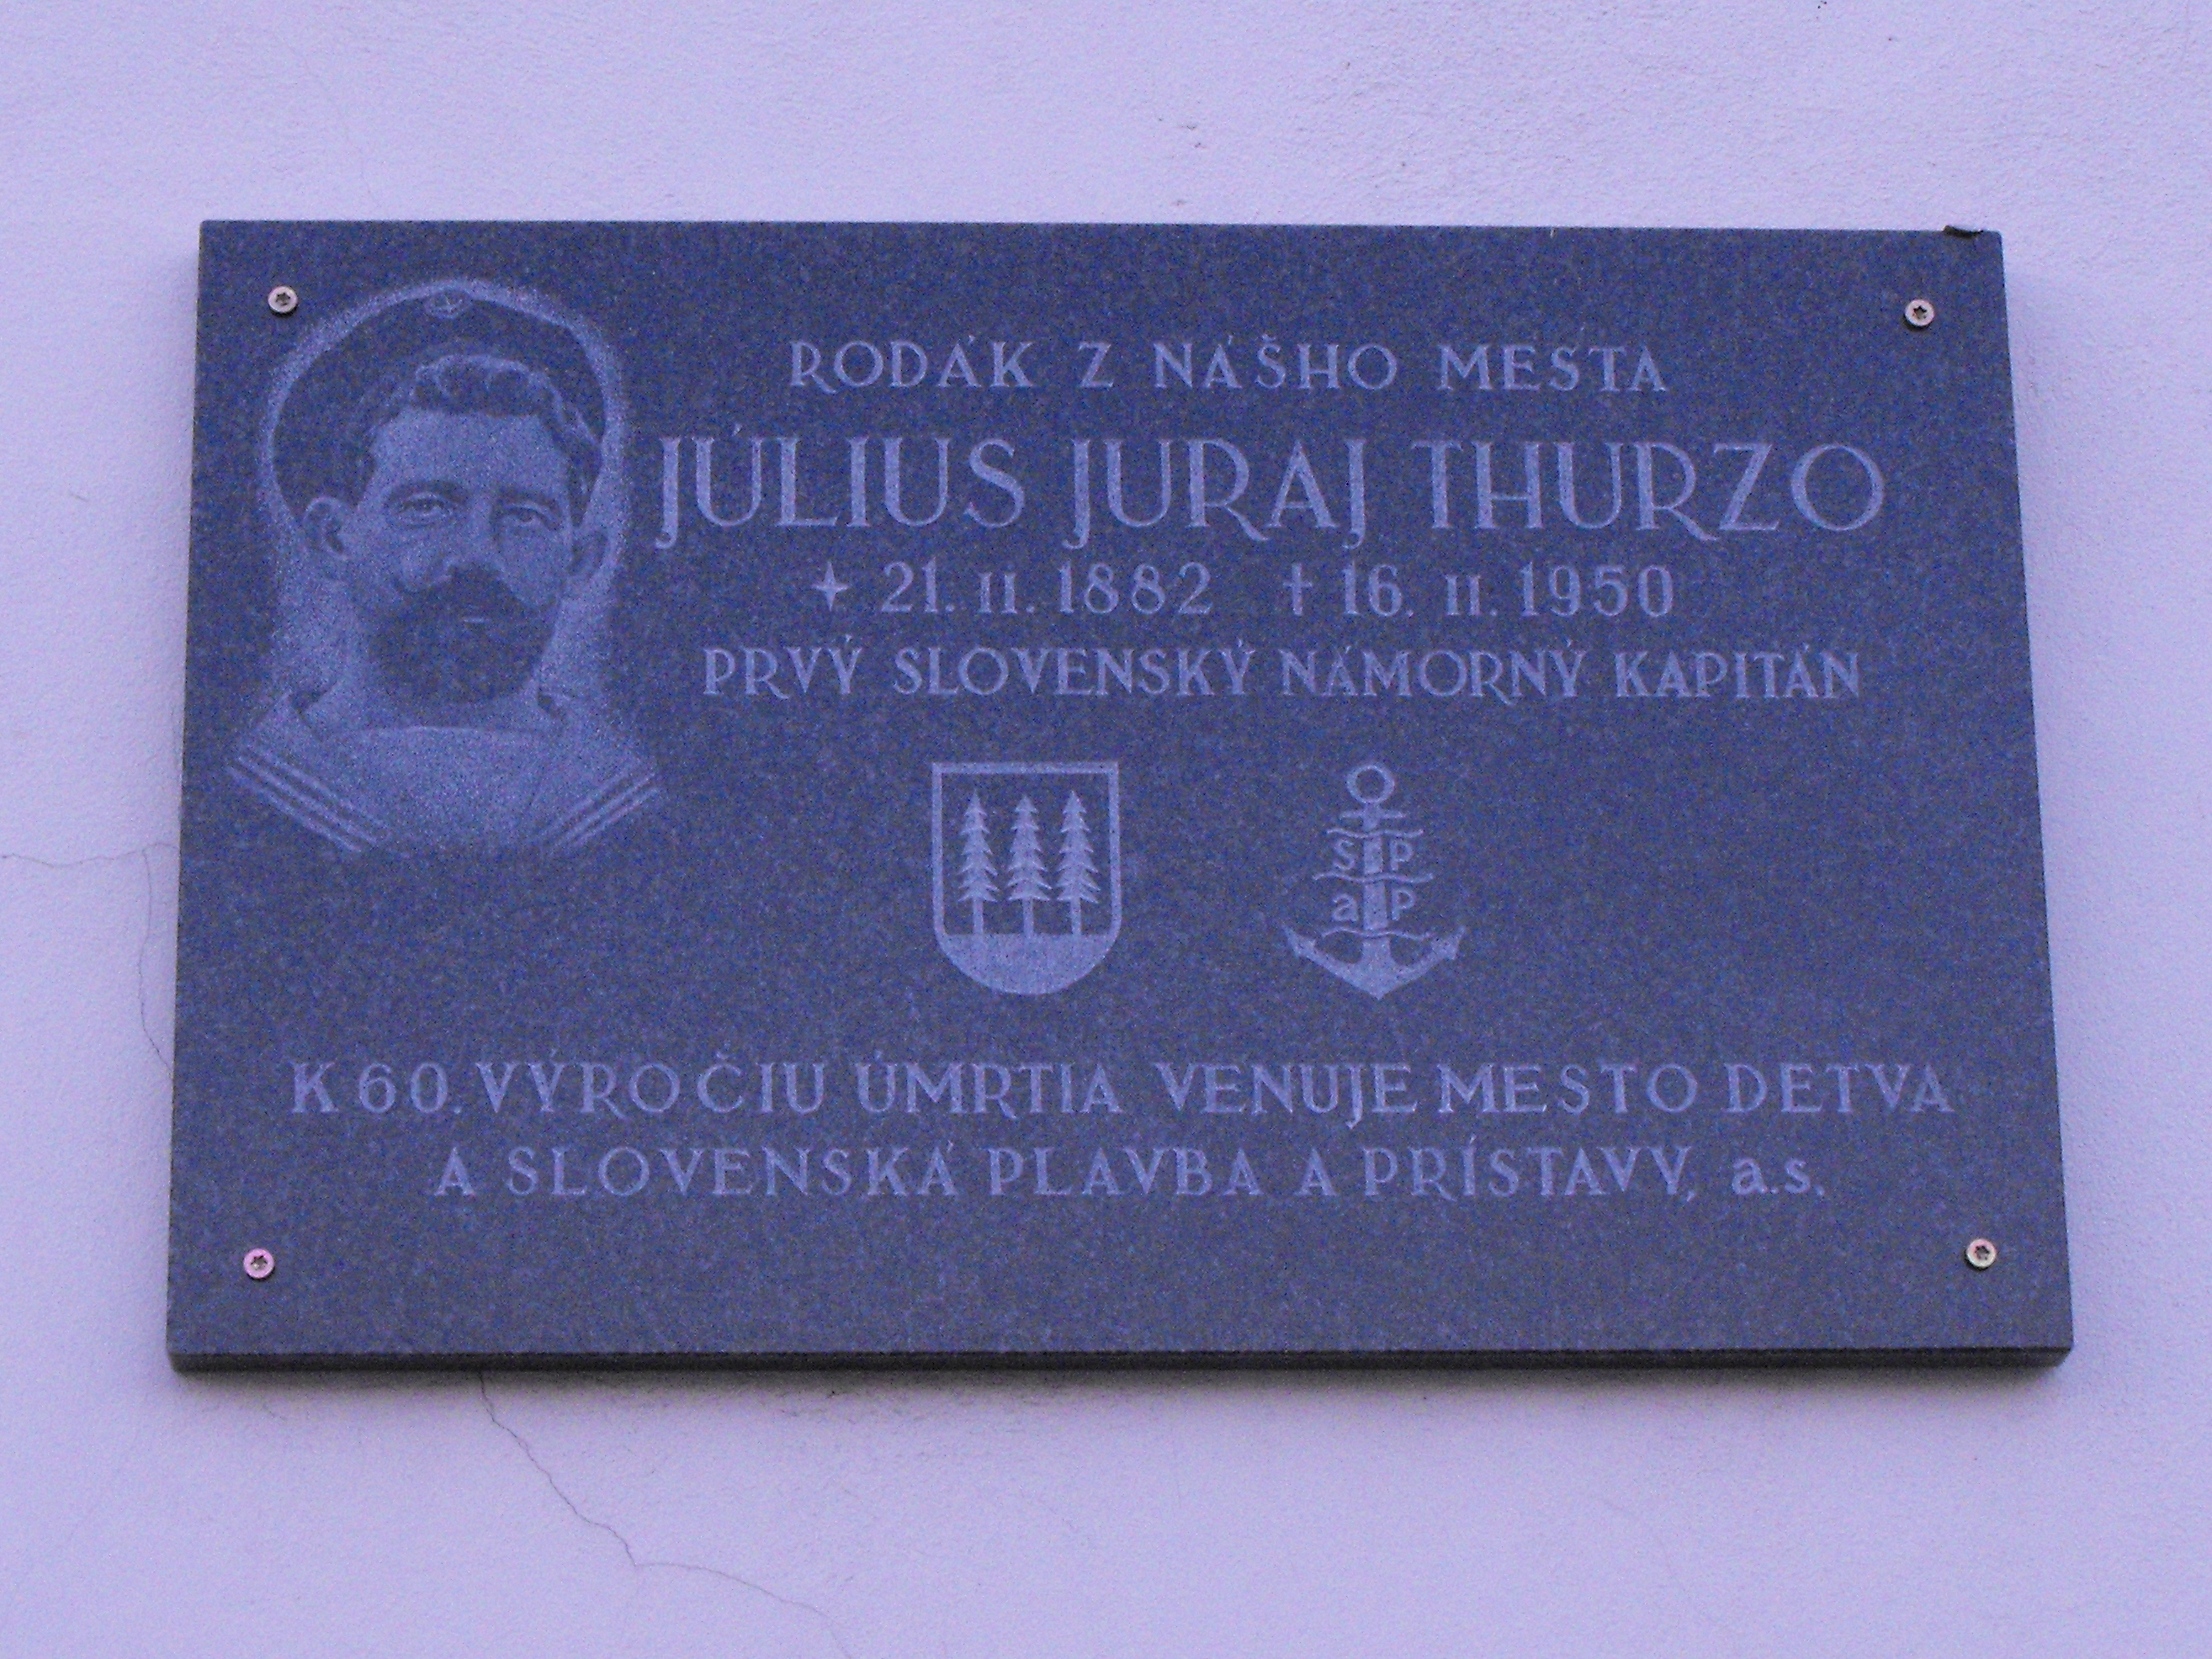 Július Juraj Thurzo